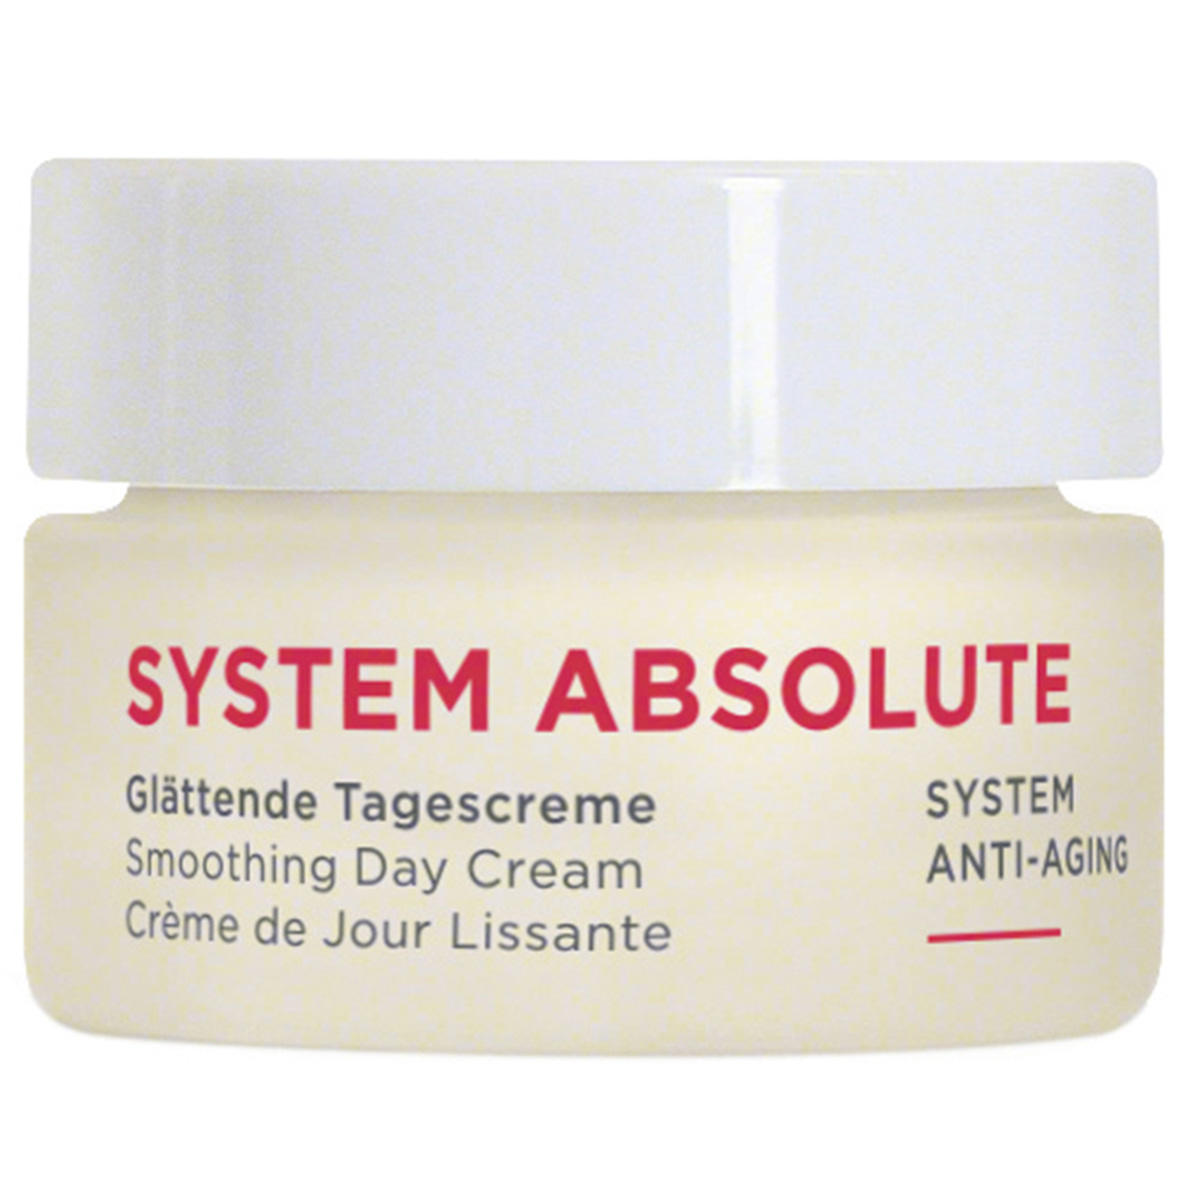 ANNEMARIE BÖRLIND SYSTEM ABSOLUTE Crème de Jour Lissante TAILLE D'ACQUISITION 15 ml - 1